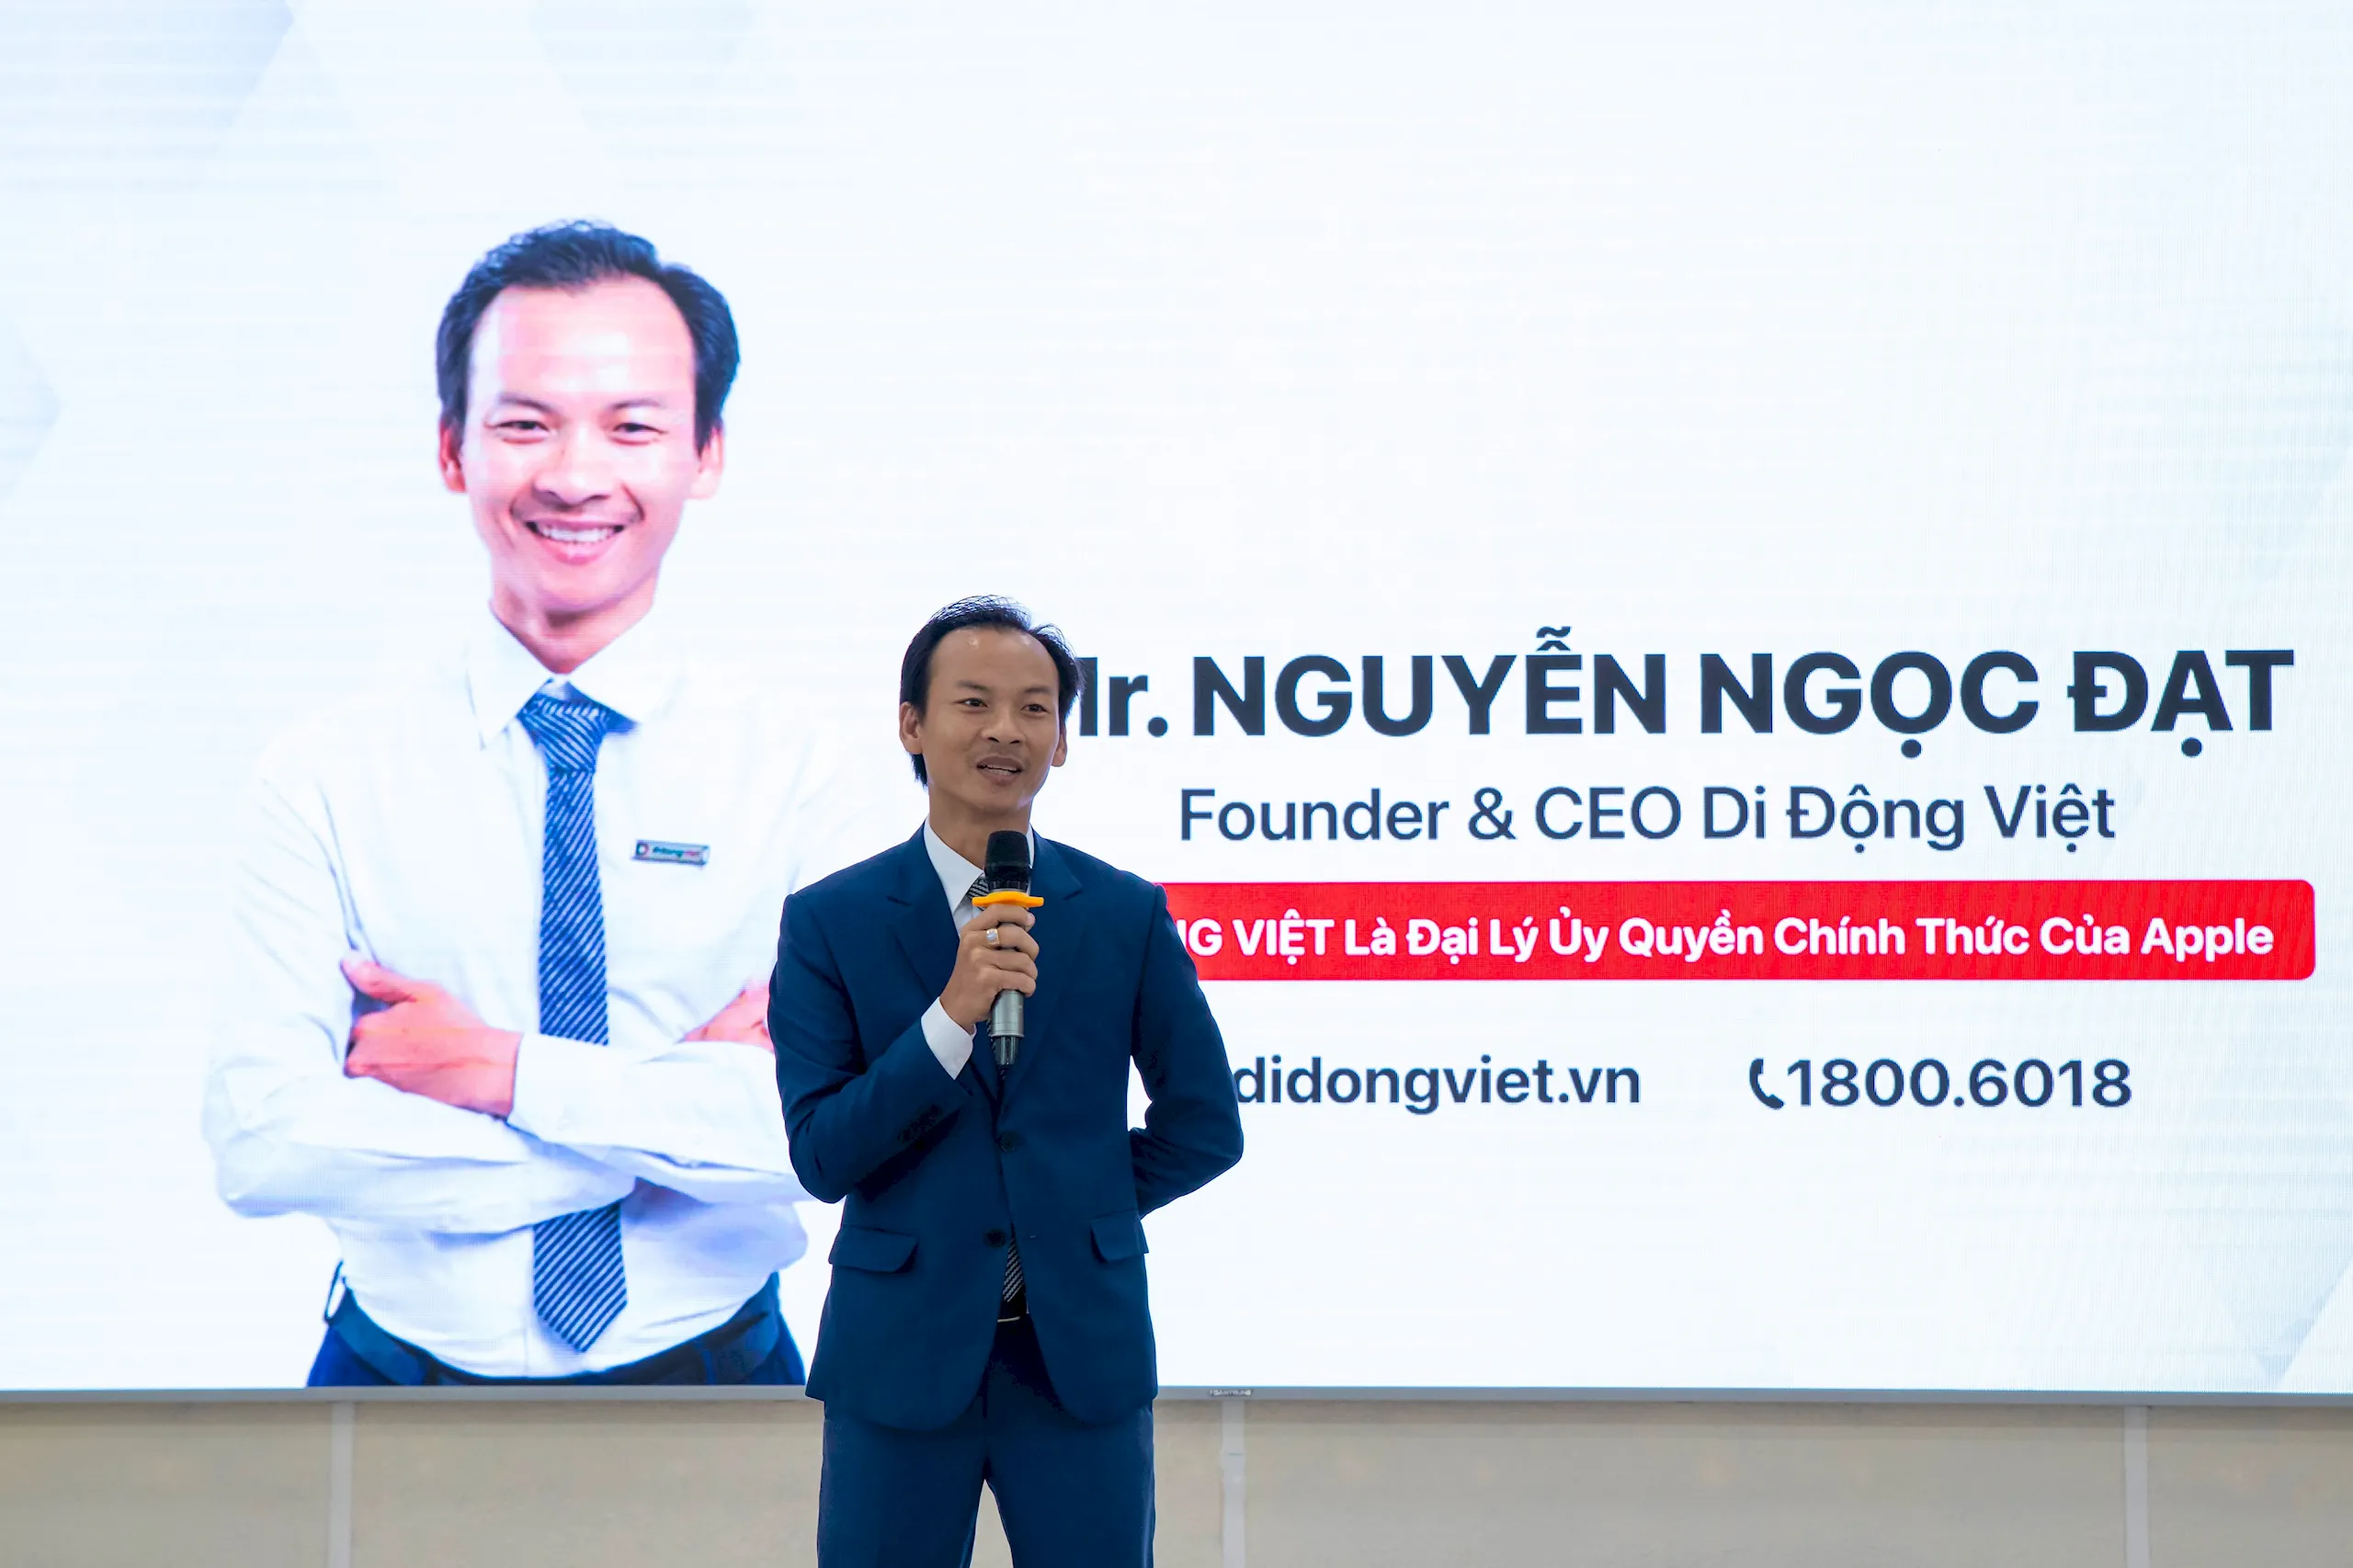 CEO Di Động Việt: Chúng tôi bán hàng không chỉ vì lợi nhuận